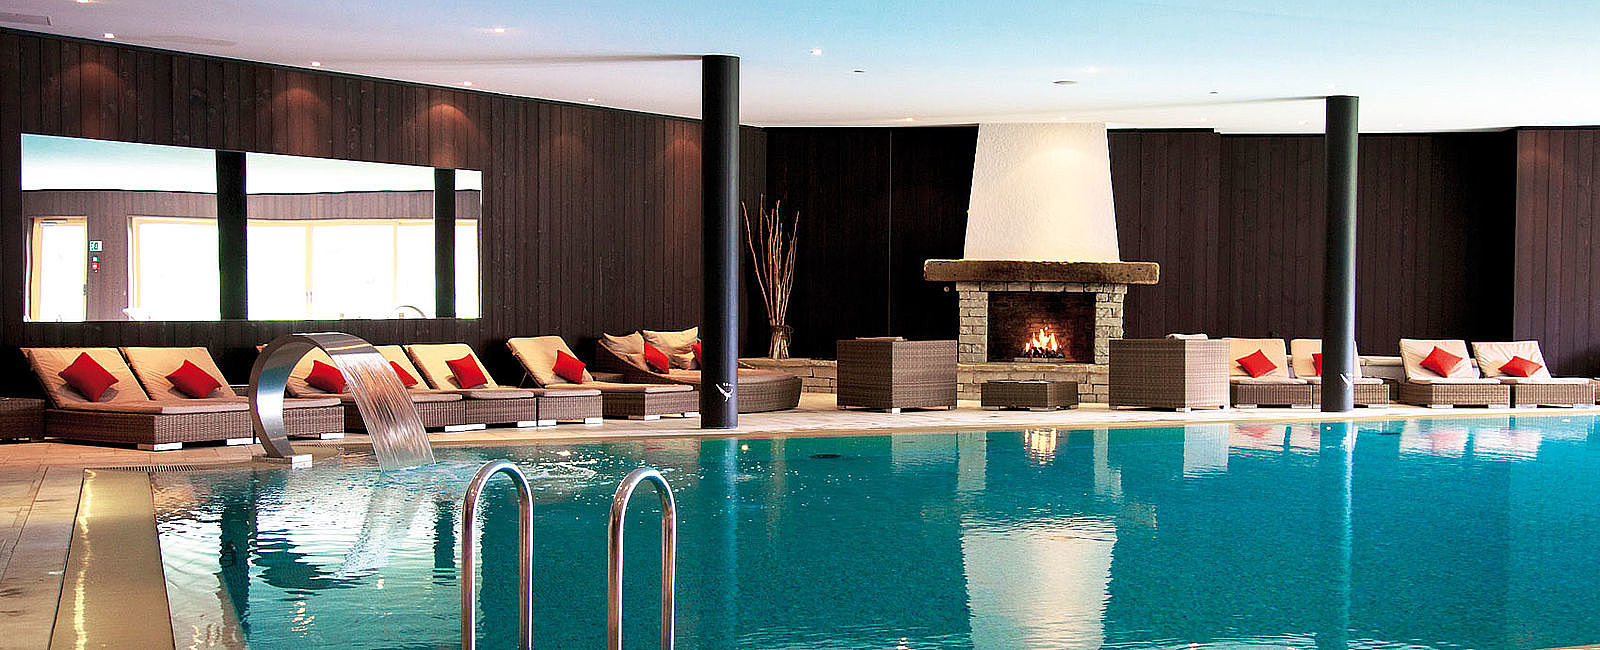 HOTEL ANGEBOTE
 Chalet RoyAlp Hôtel & Spa: Winter-Cocooning 
